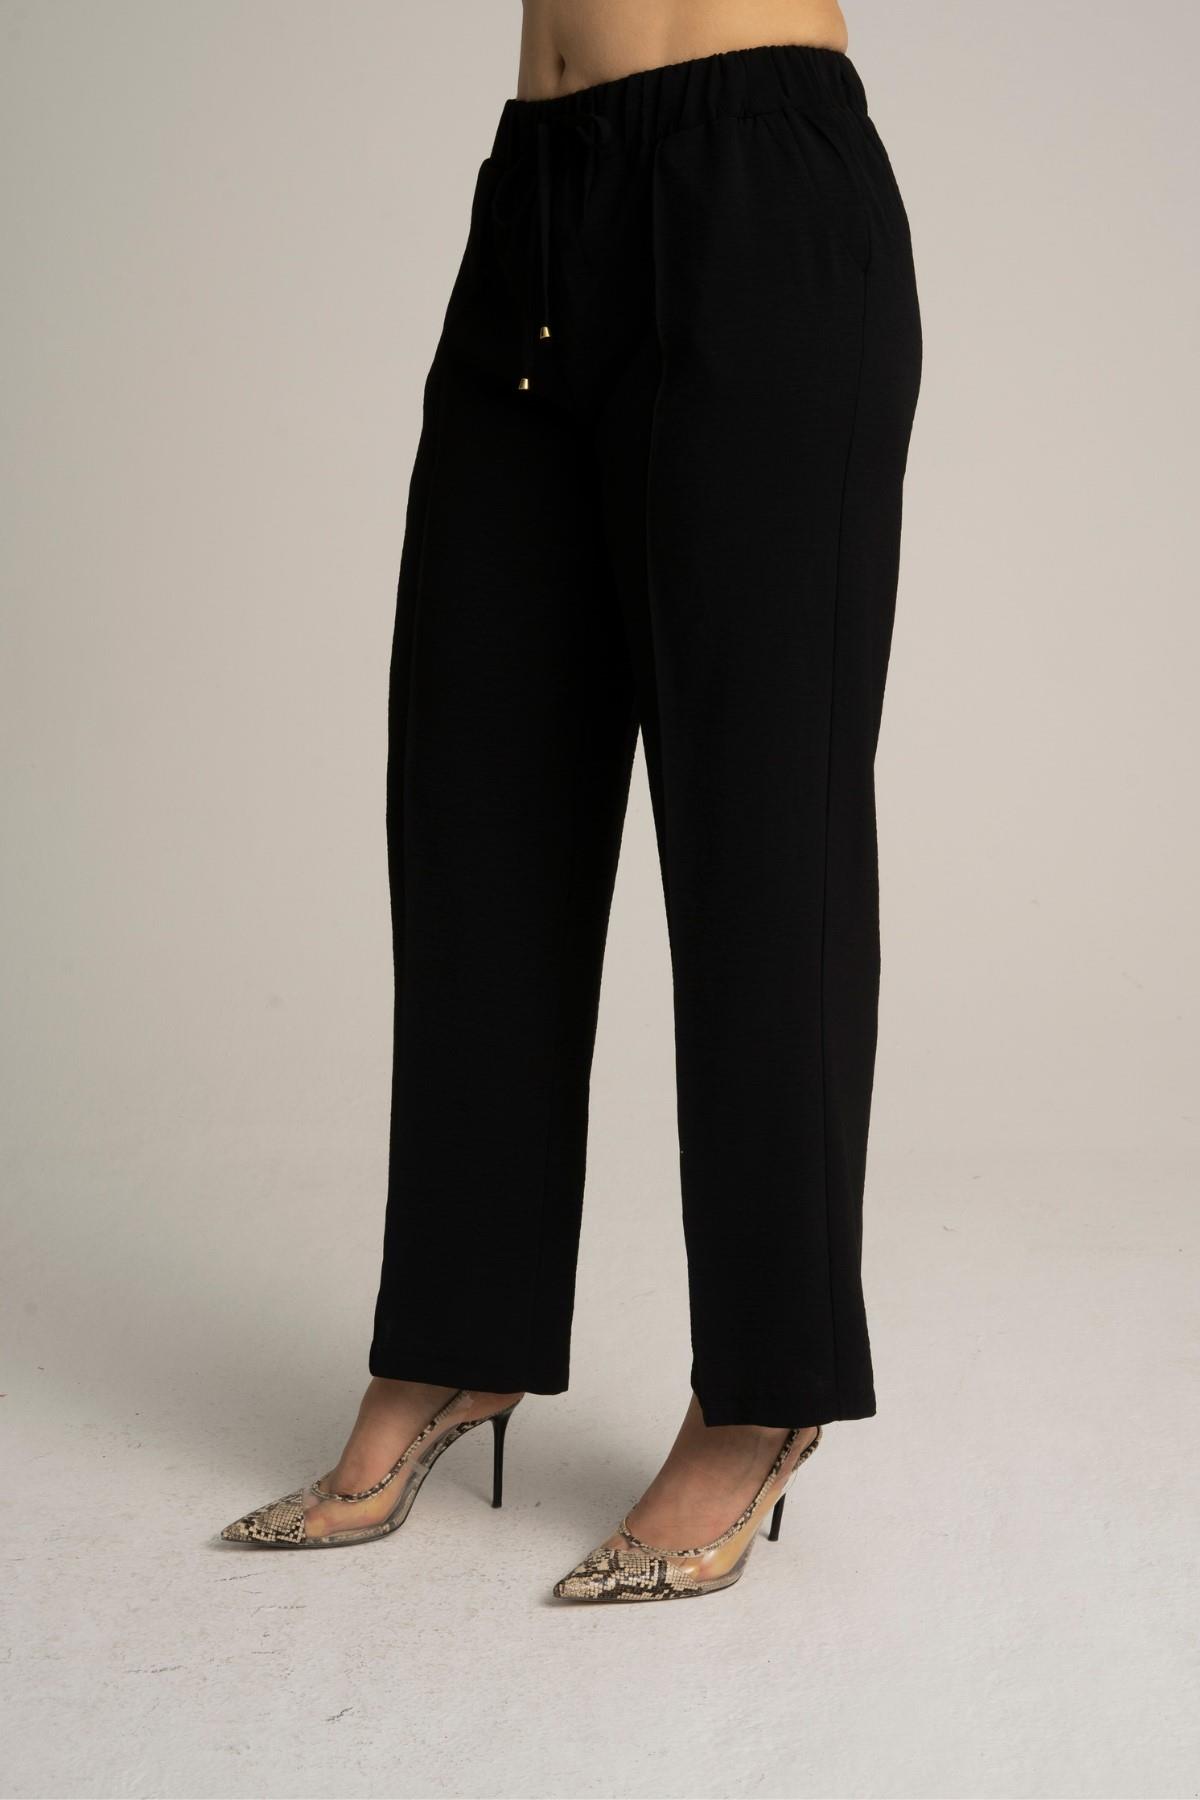 Kadın Büyük Beden Beli Lastikli Bol Paça Salaş Yazlık Siyah Renk Pantolon